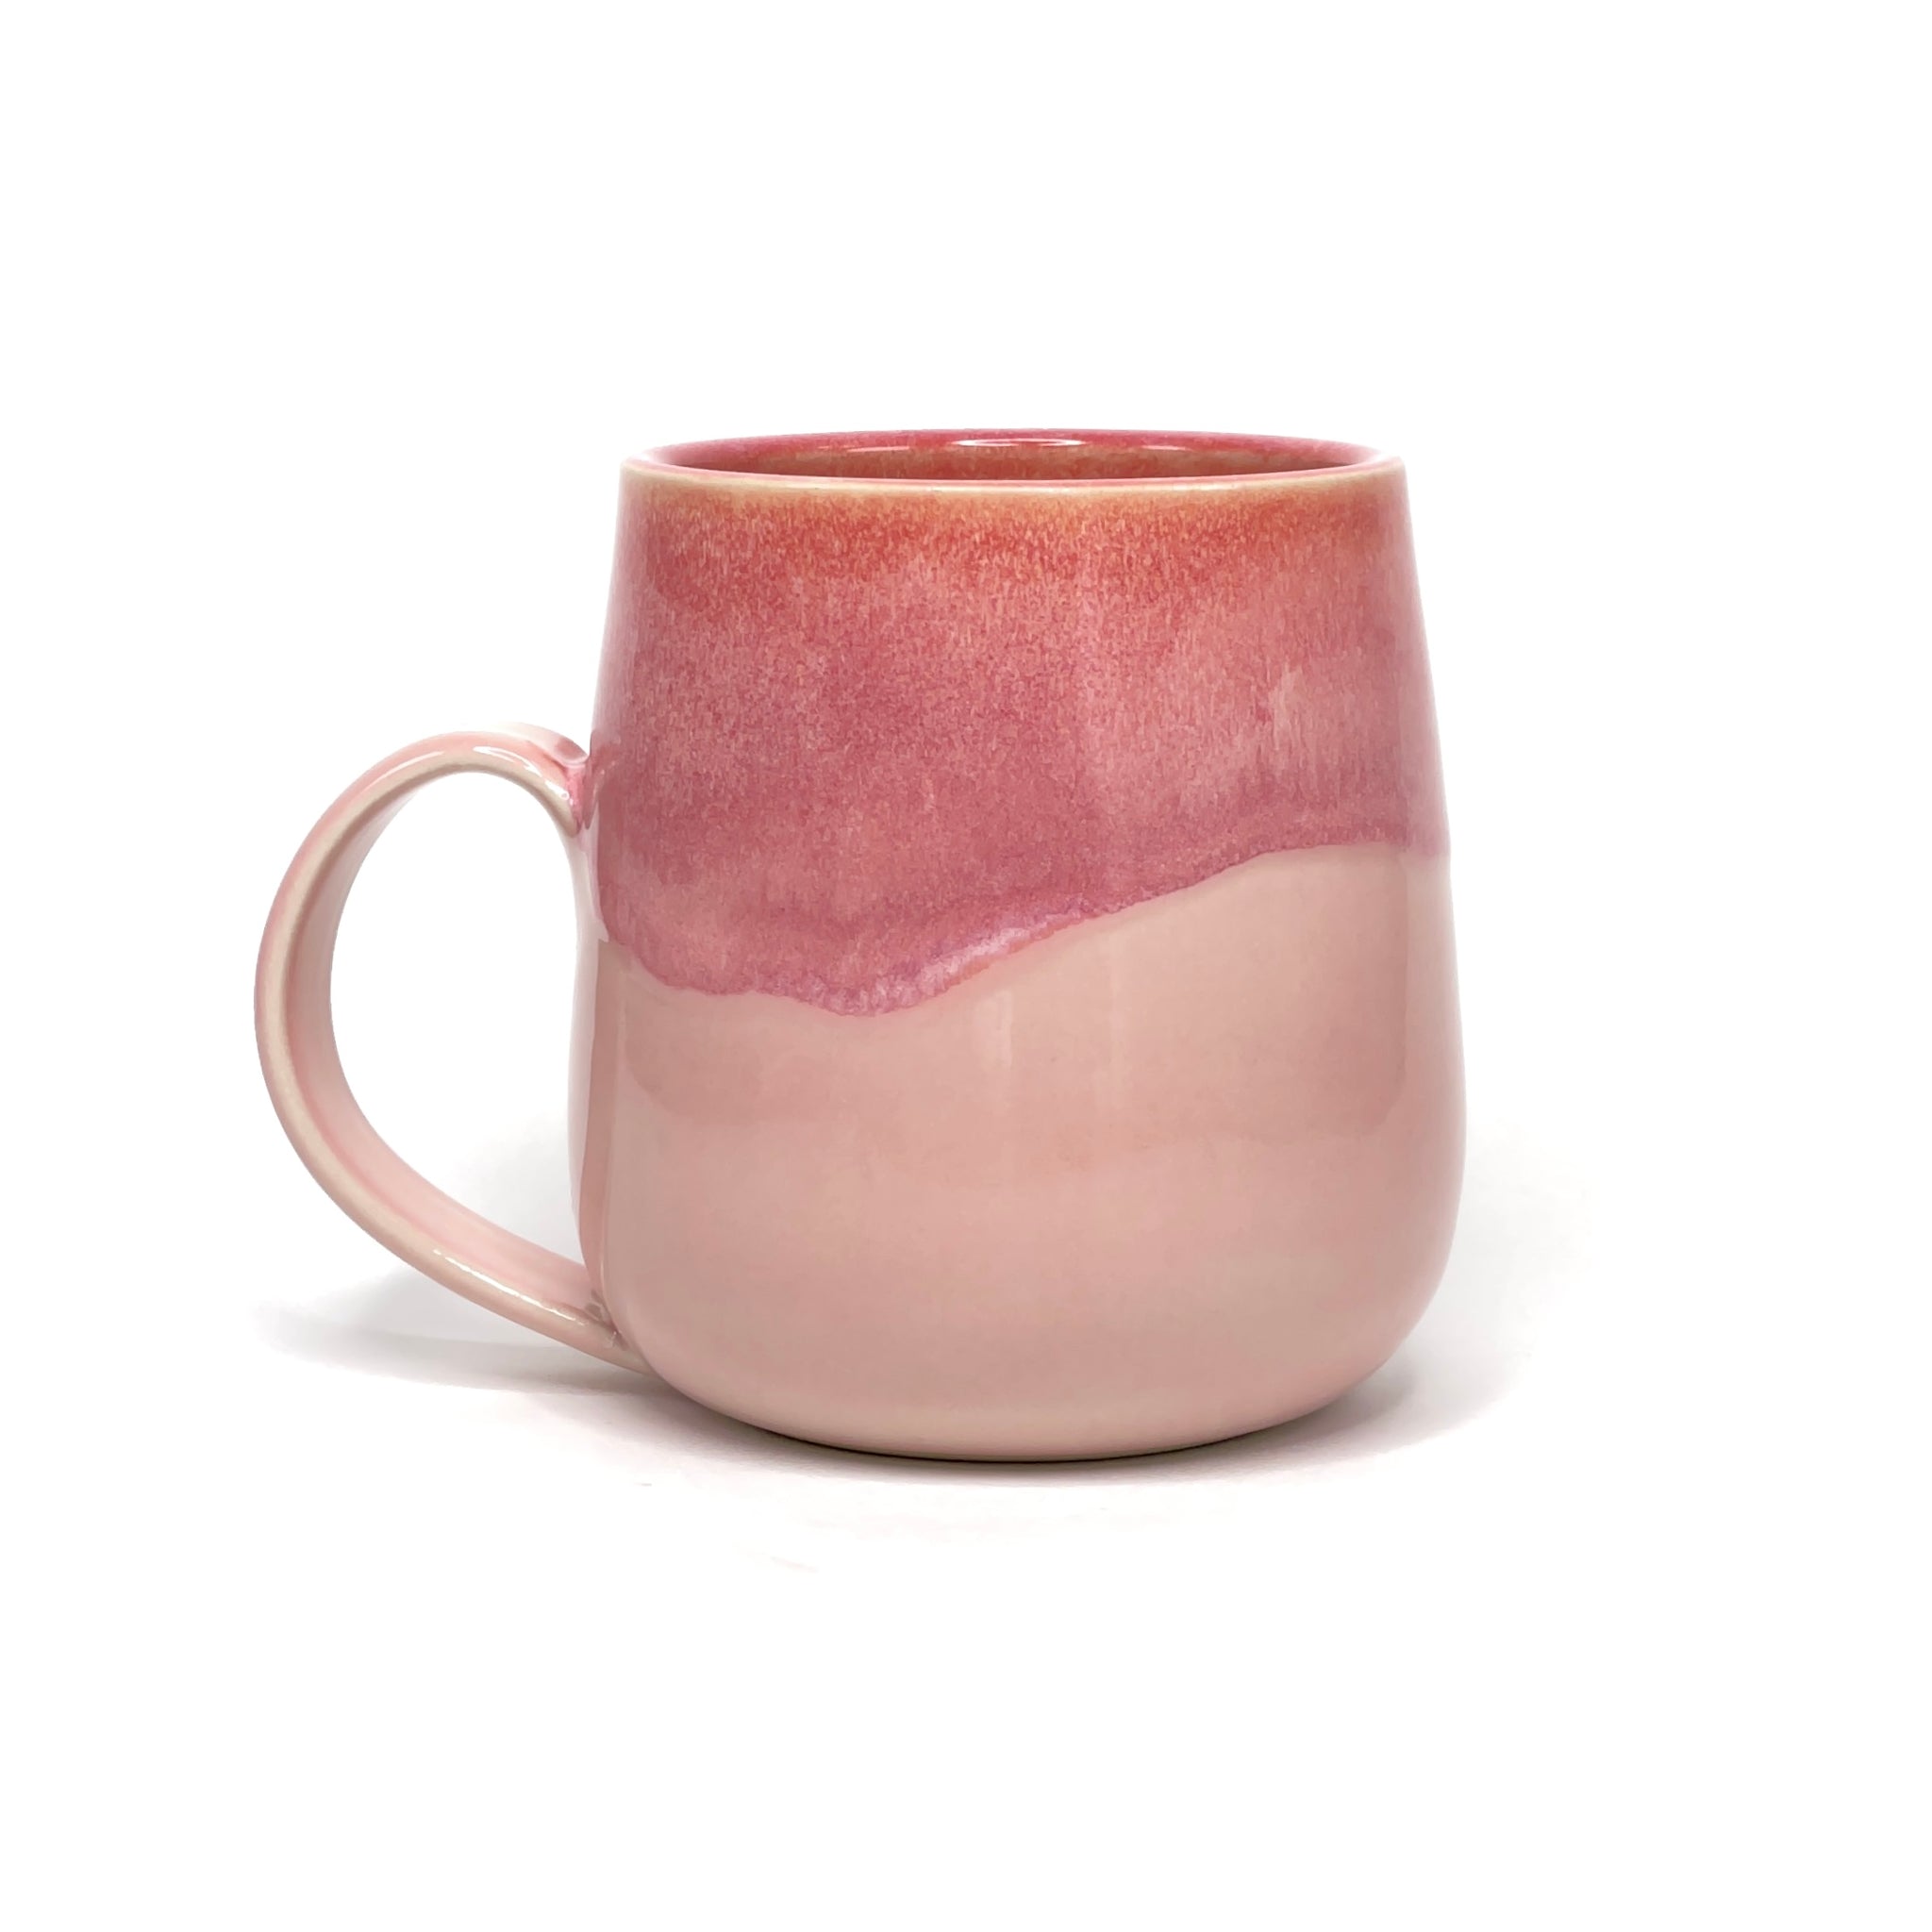 Glazed Mug 4